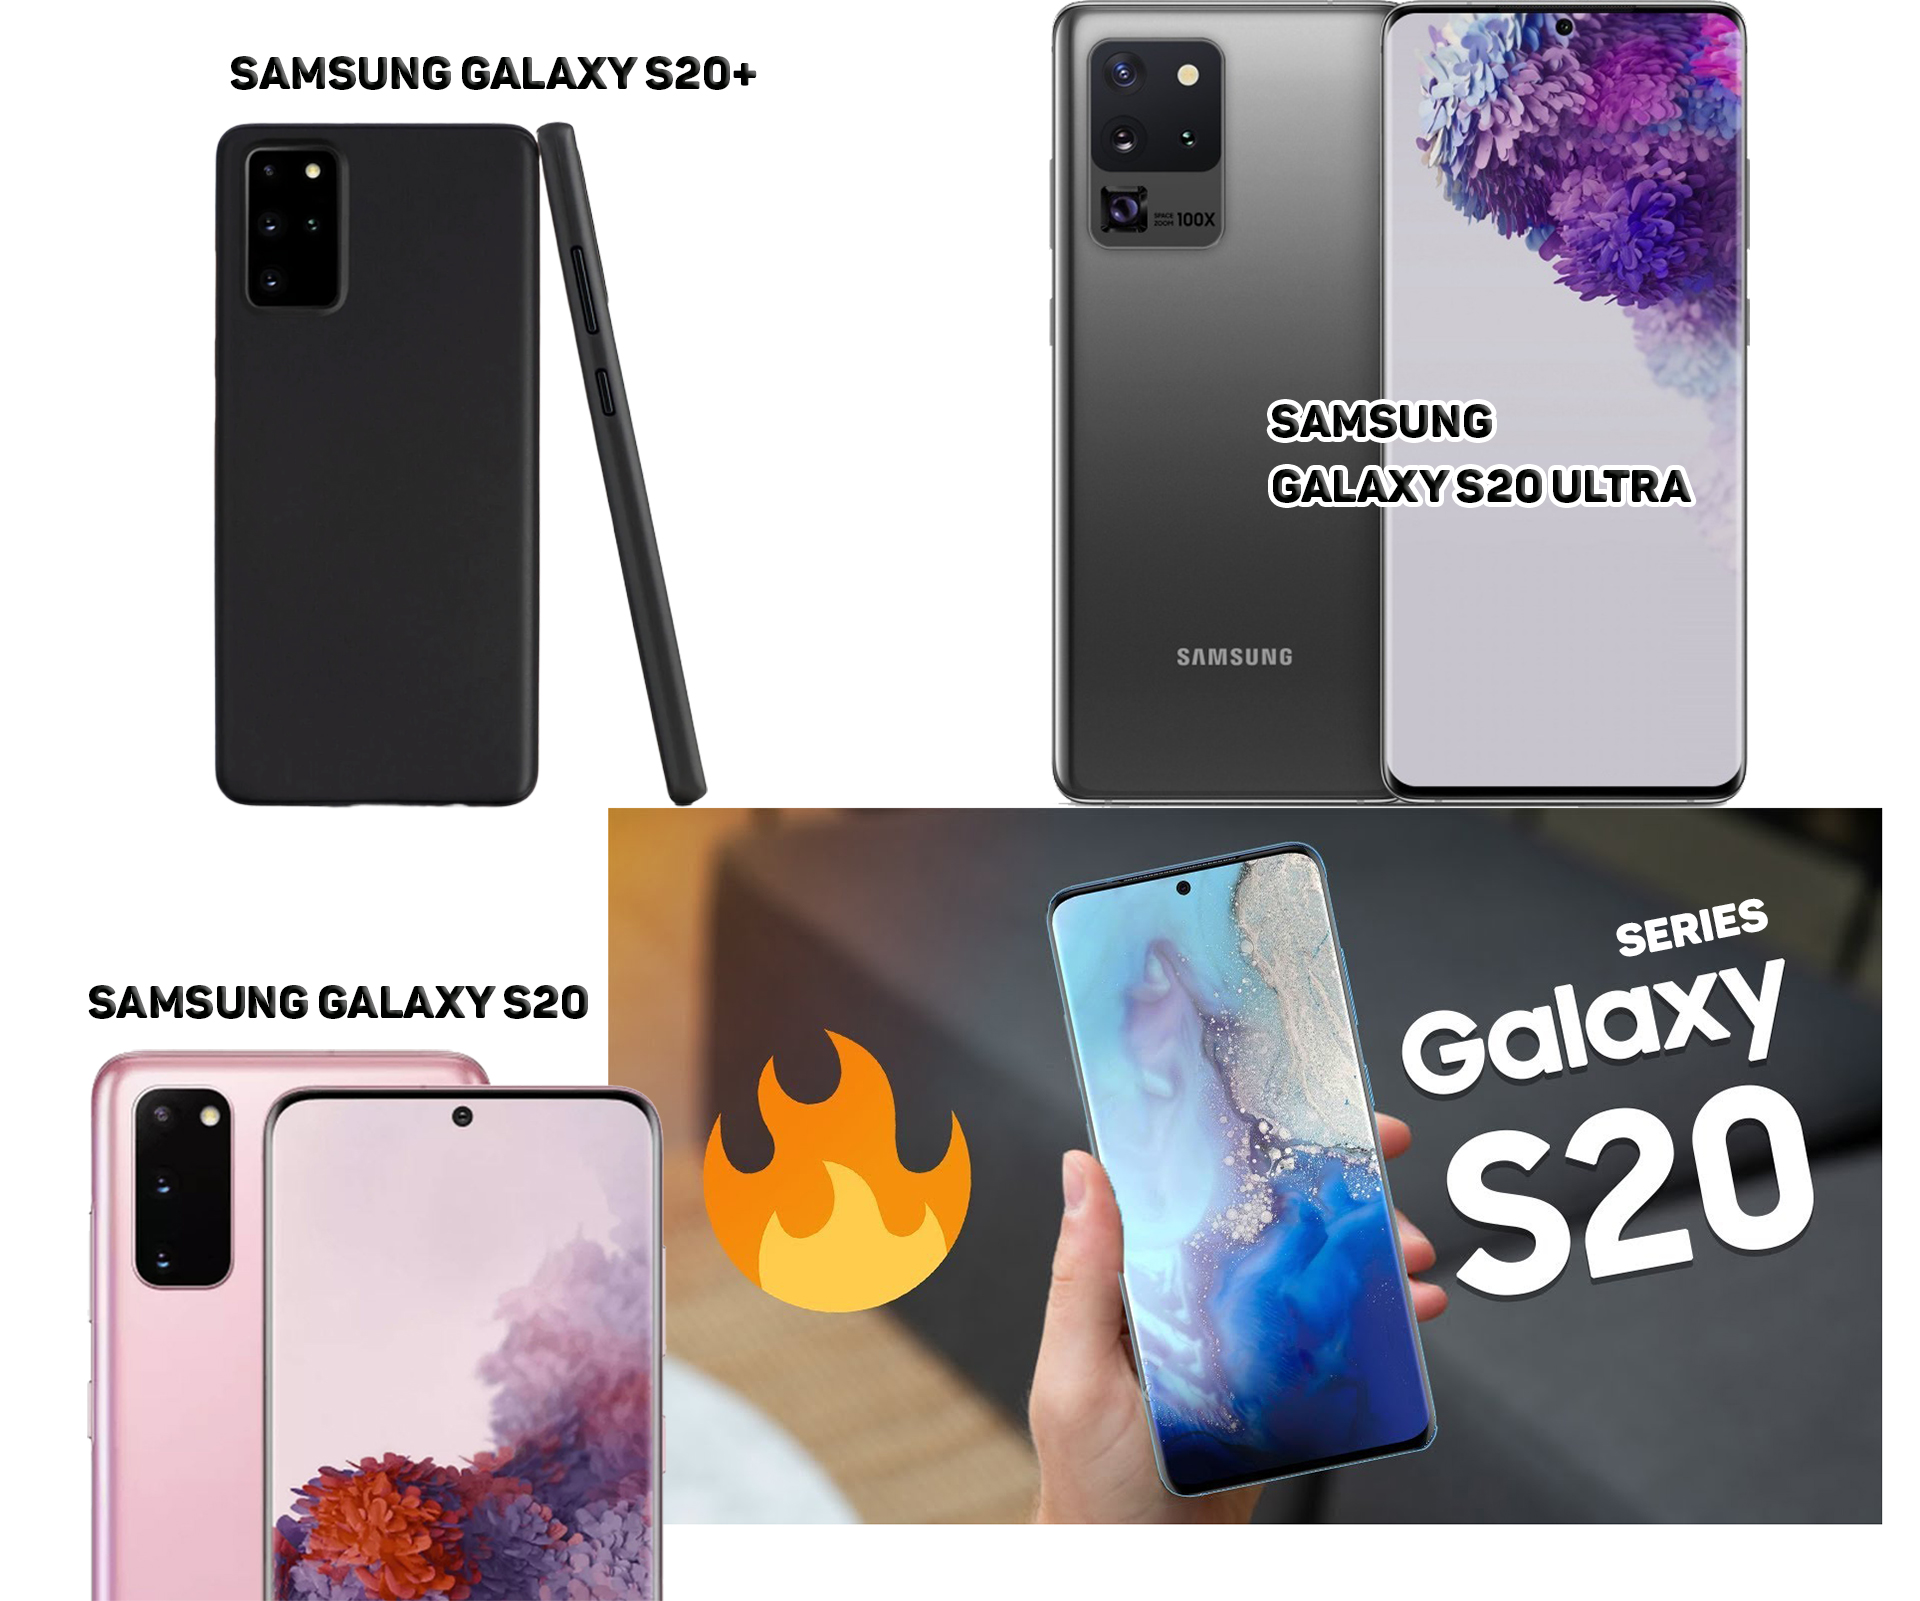 Series Samsung Galaxy S20: Bộ ba siêu phẩm hứa hẹn nhiều đột phá - 8